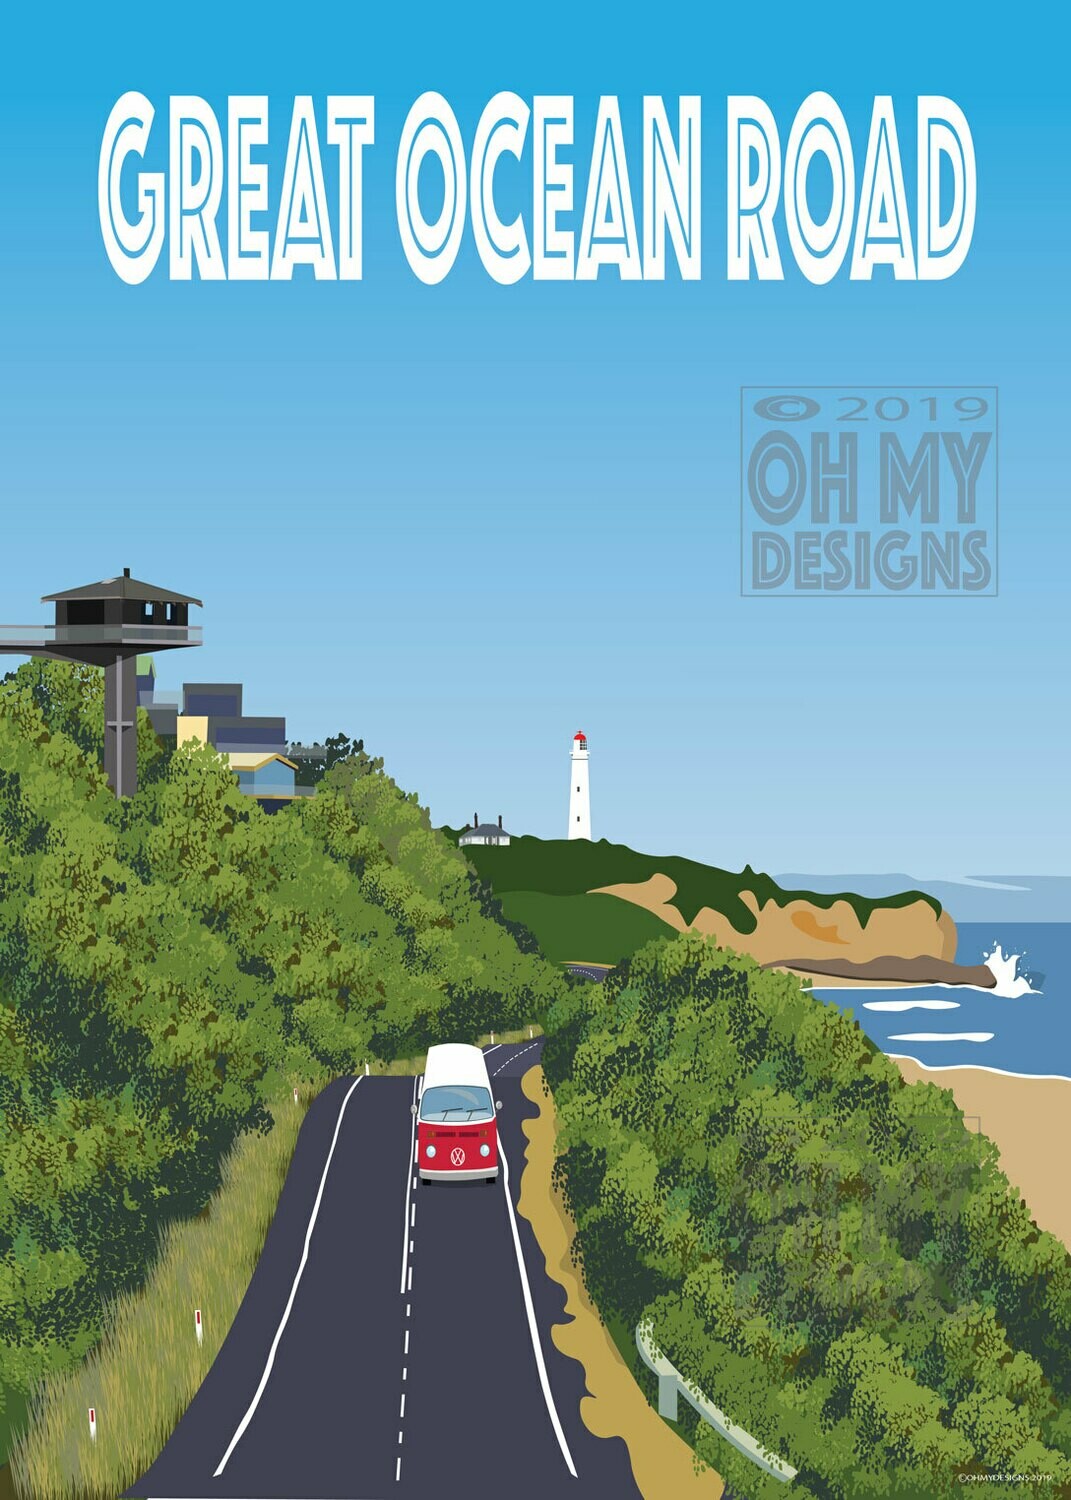 Great Ocean Road - Fairhaven